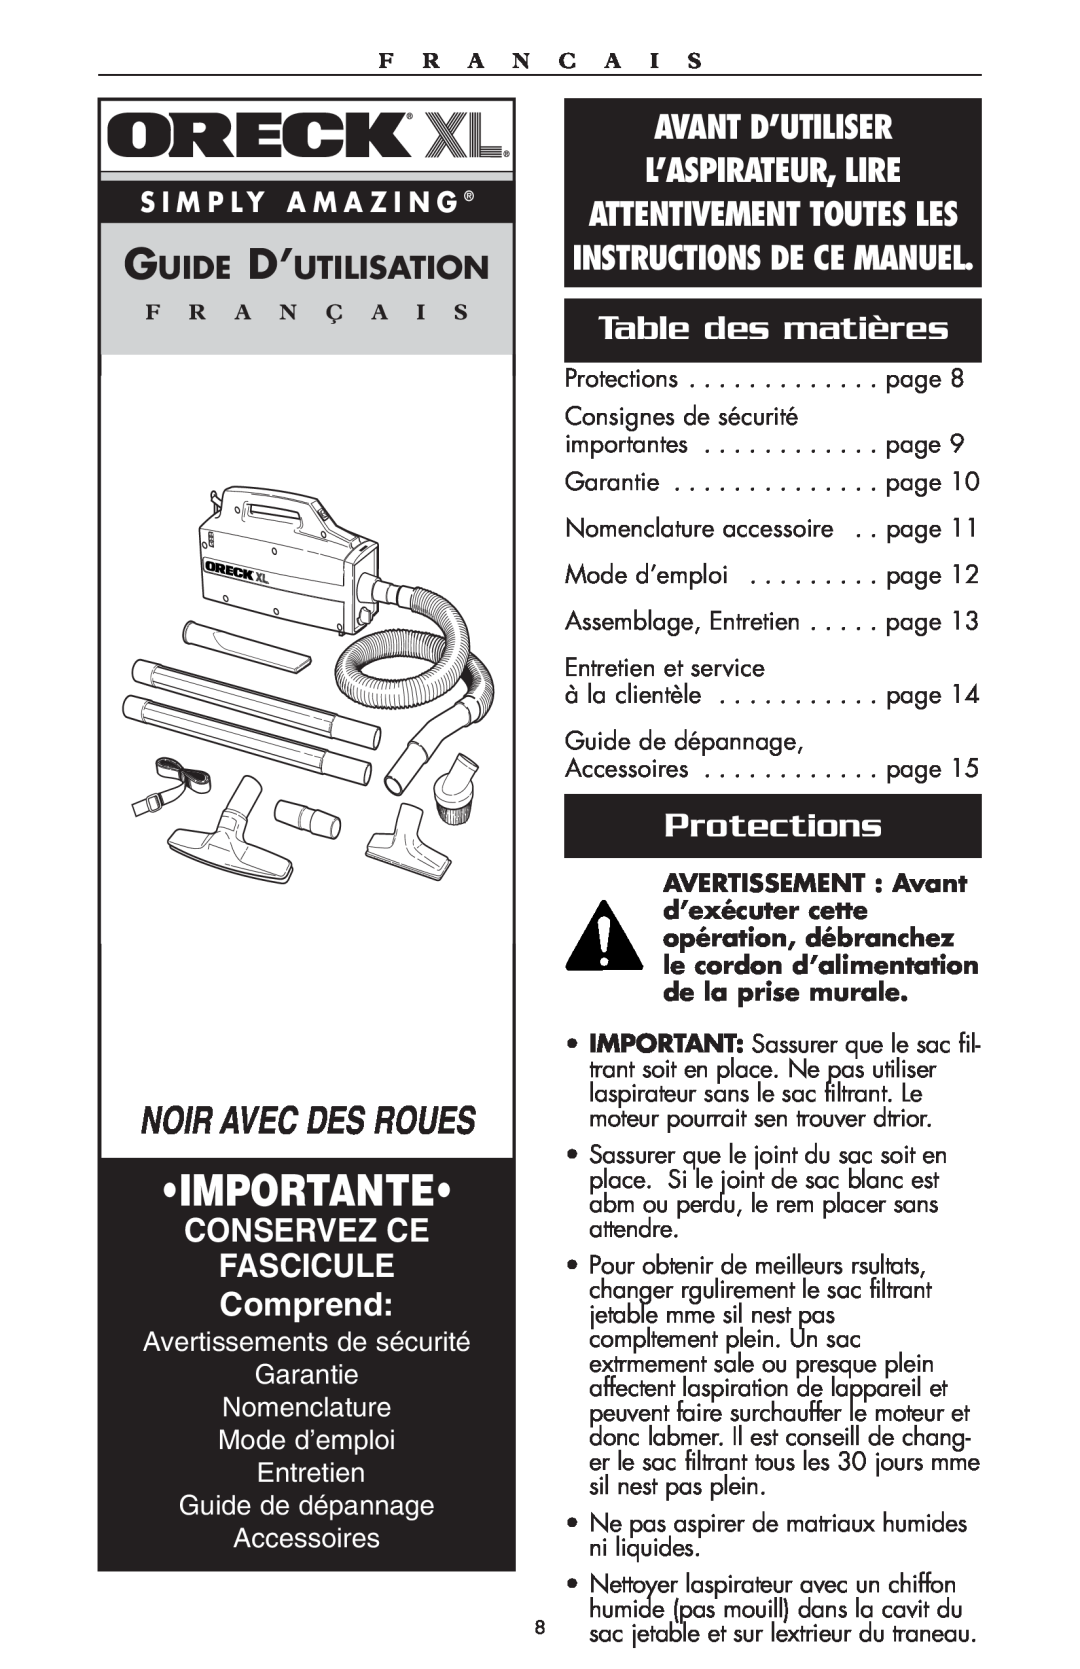 Oreck compact canister Vaccum Importante, Table des matières, Protections, Guide D’Utilisation, Conservez Ce, Fascicule 